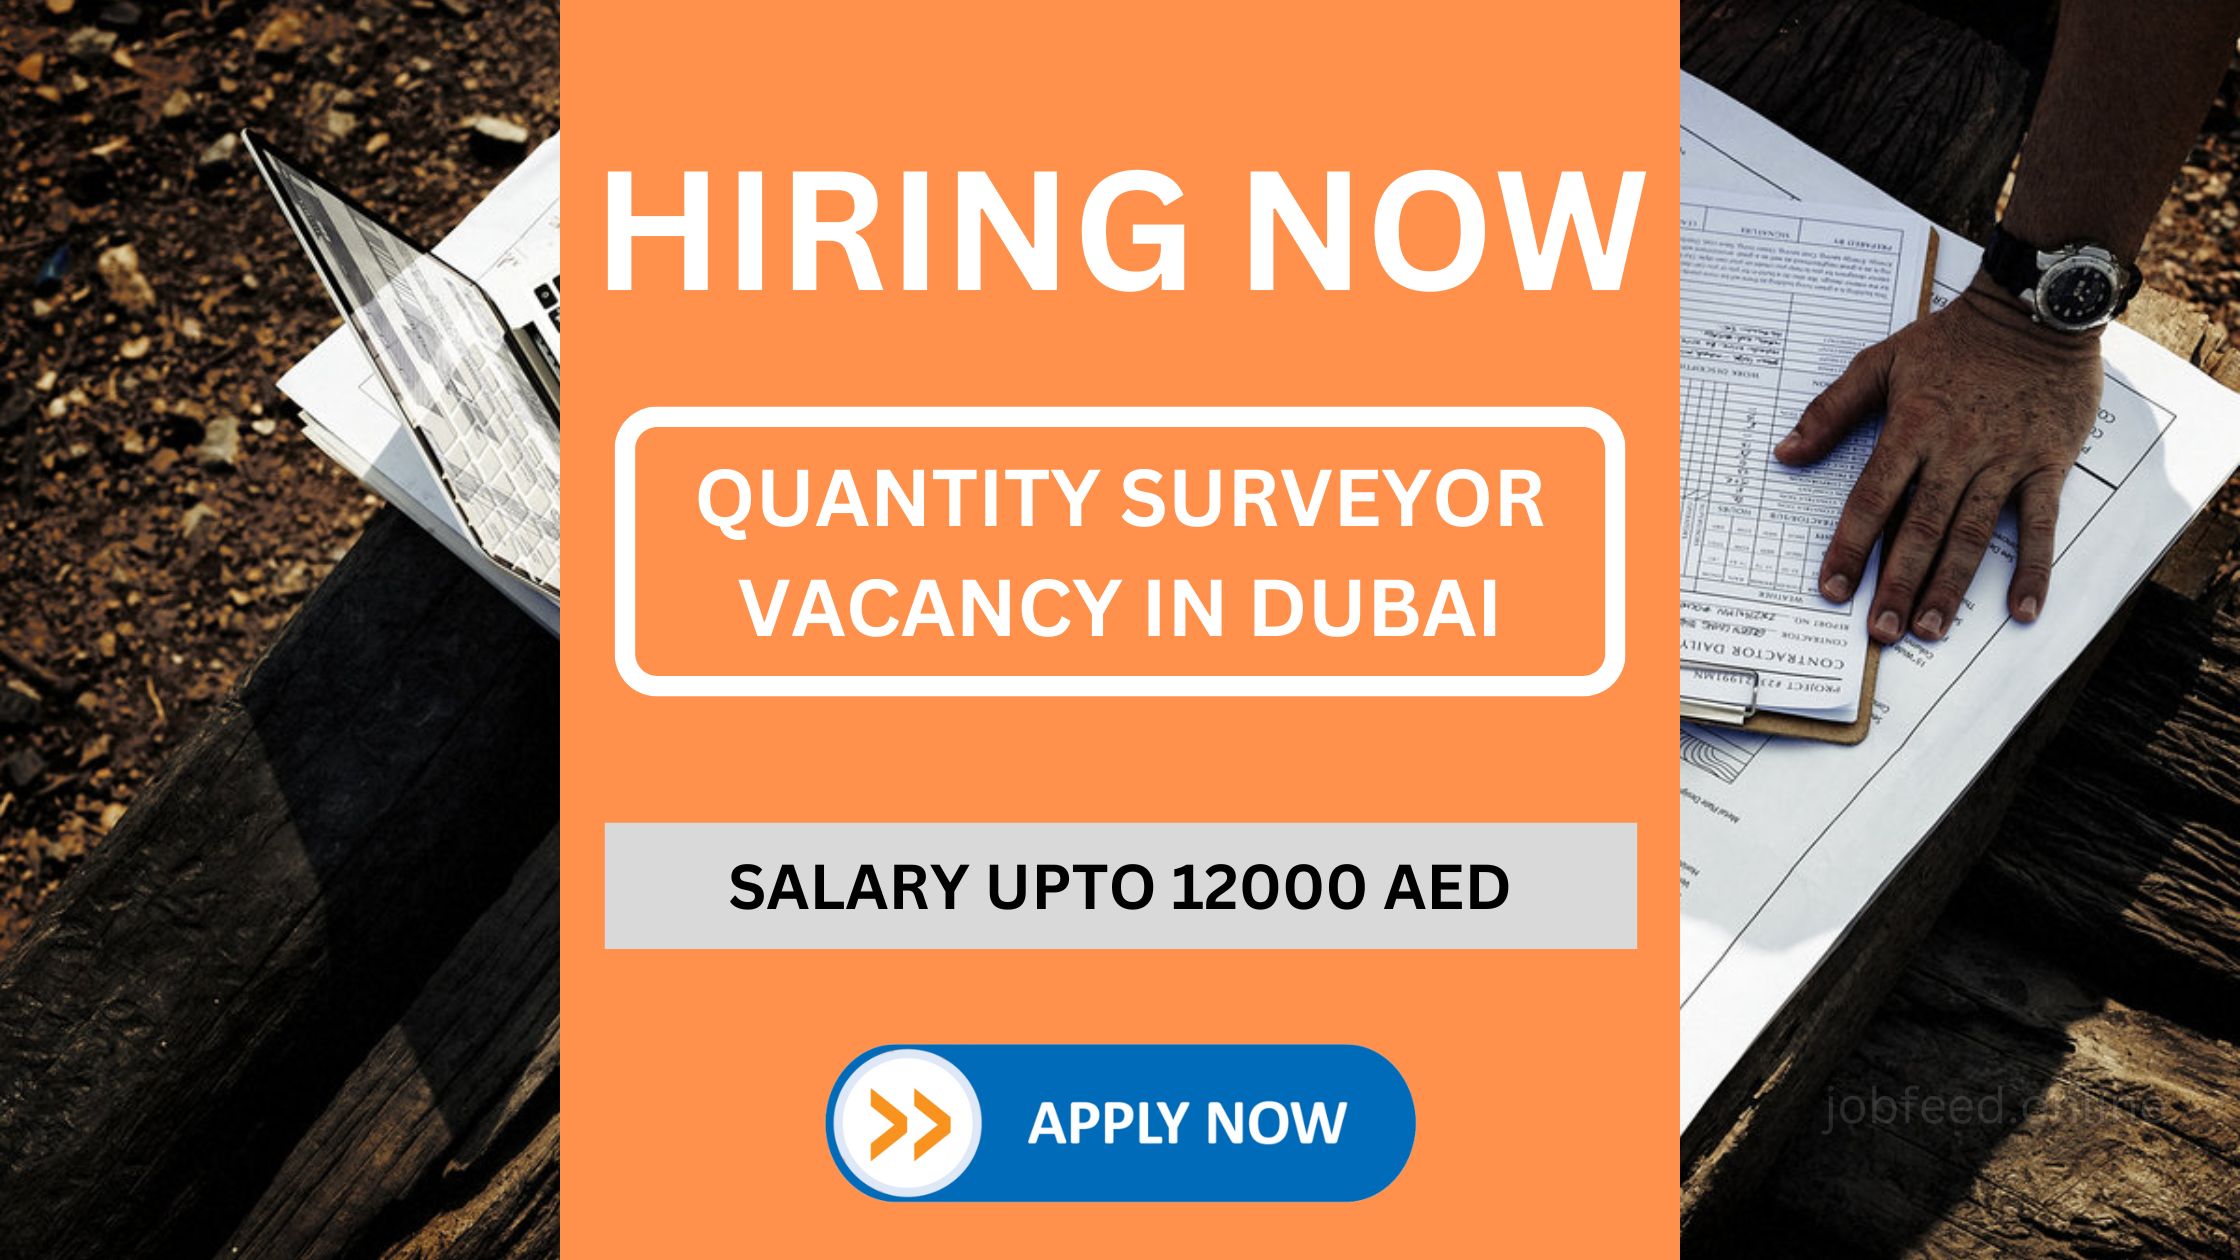 दुबई में नौकरी के लिए क्वांटिटी सर्वेयर की तलाश है। इस पद के लिए वेतन 12000 AED तक हो सकता है.